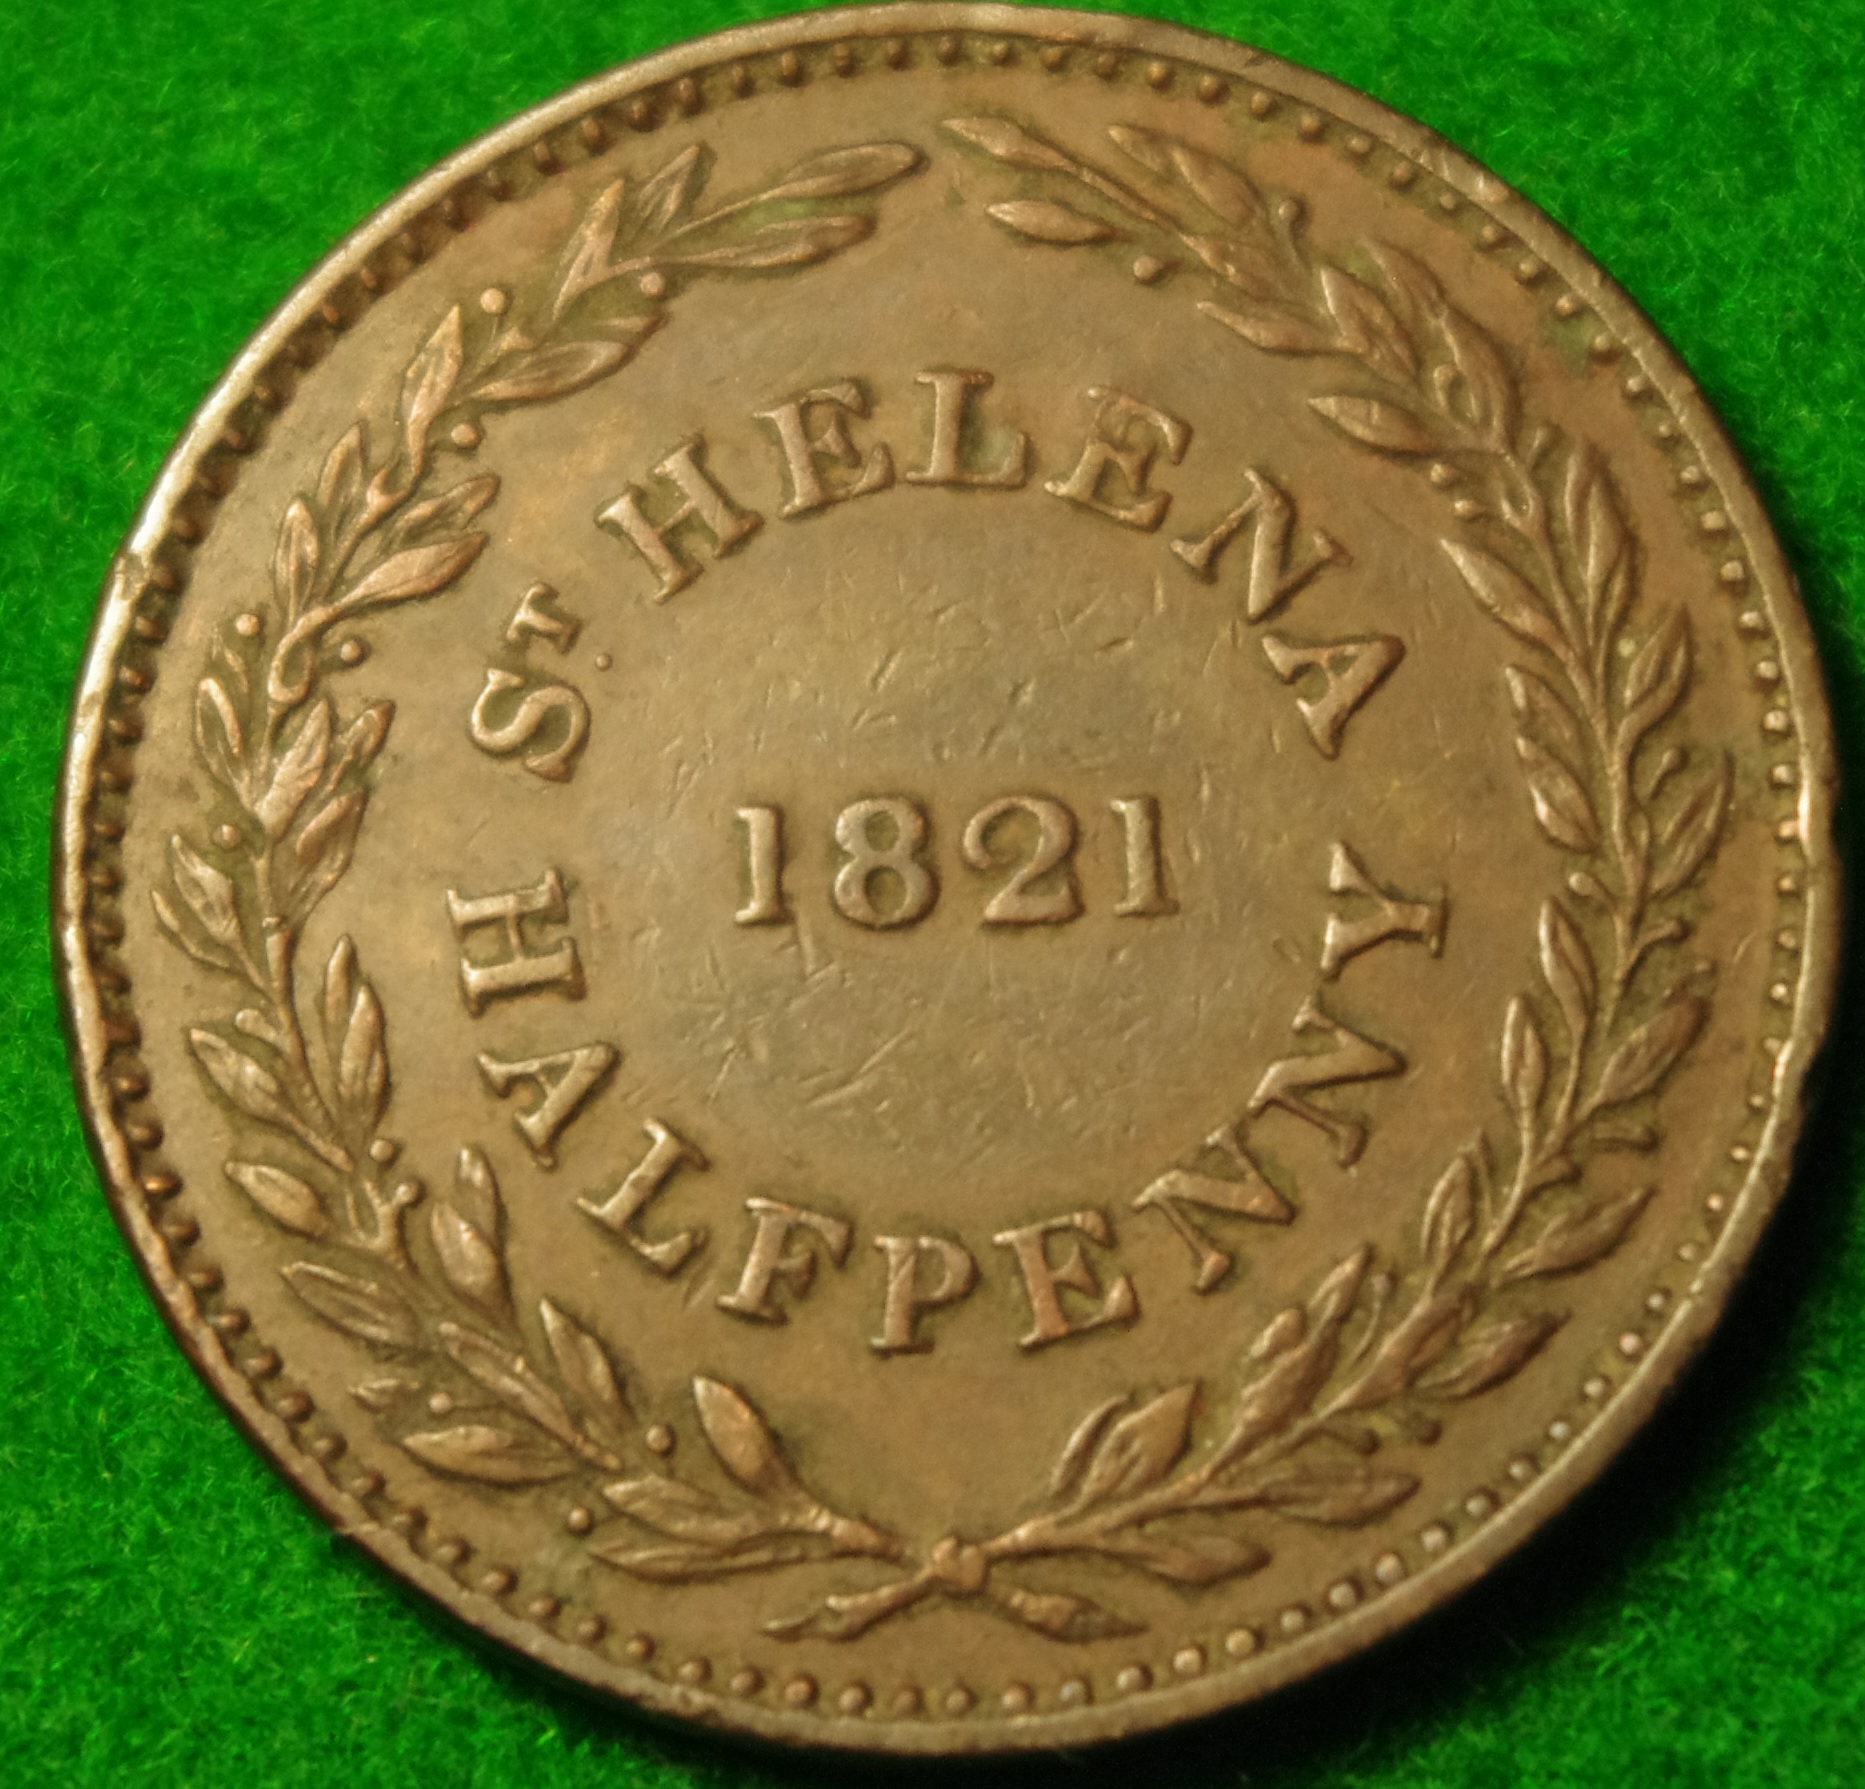 St Helena 1821 Hd 2.jpg